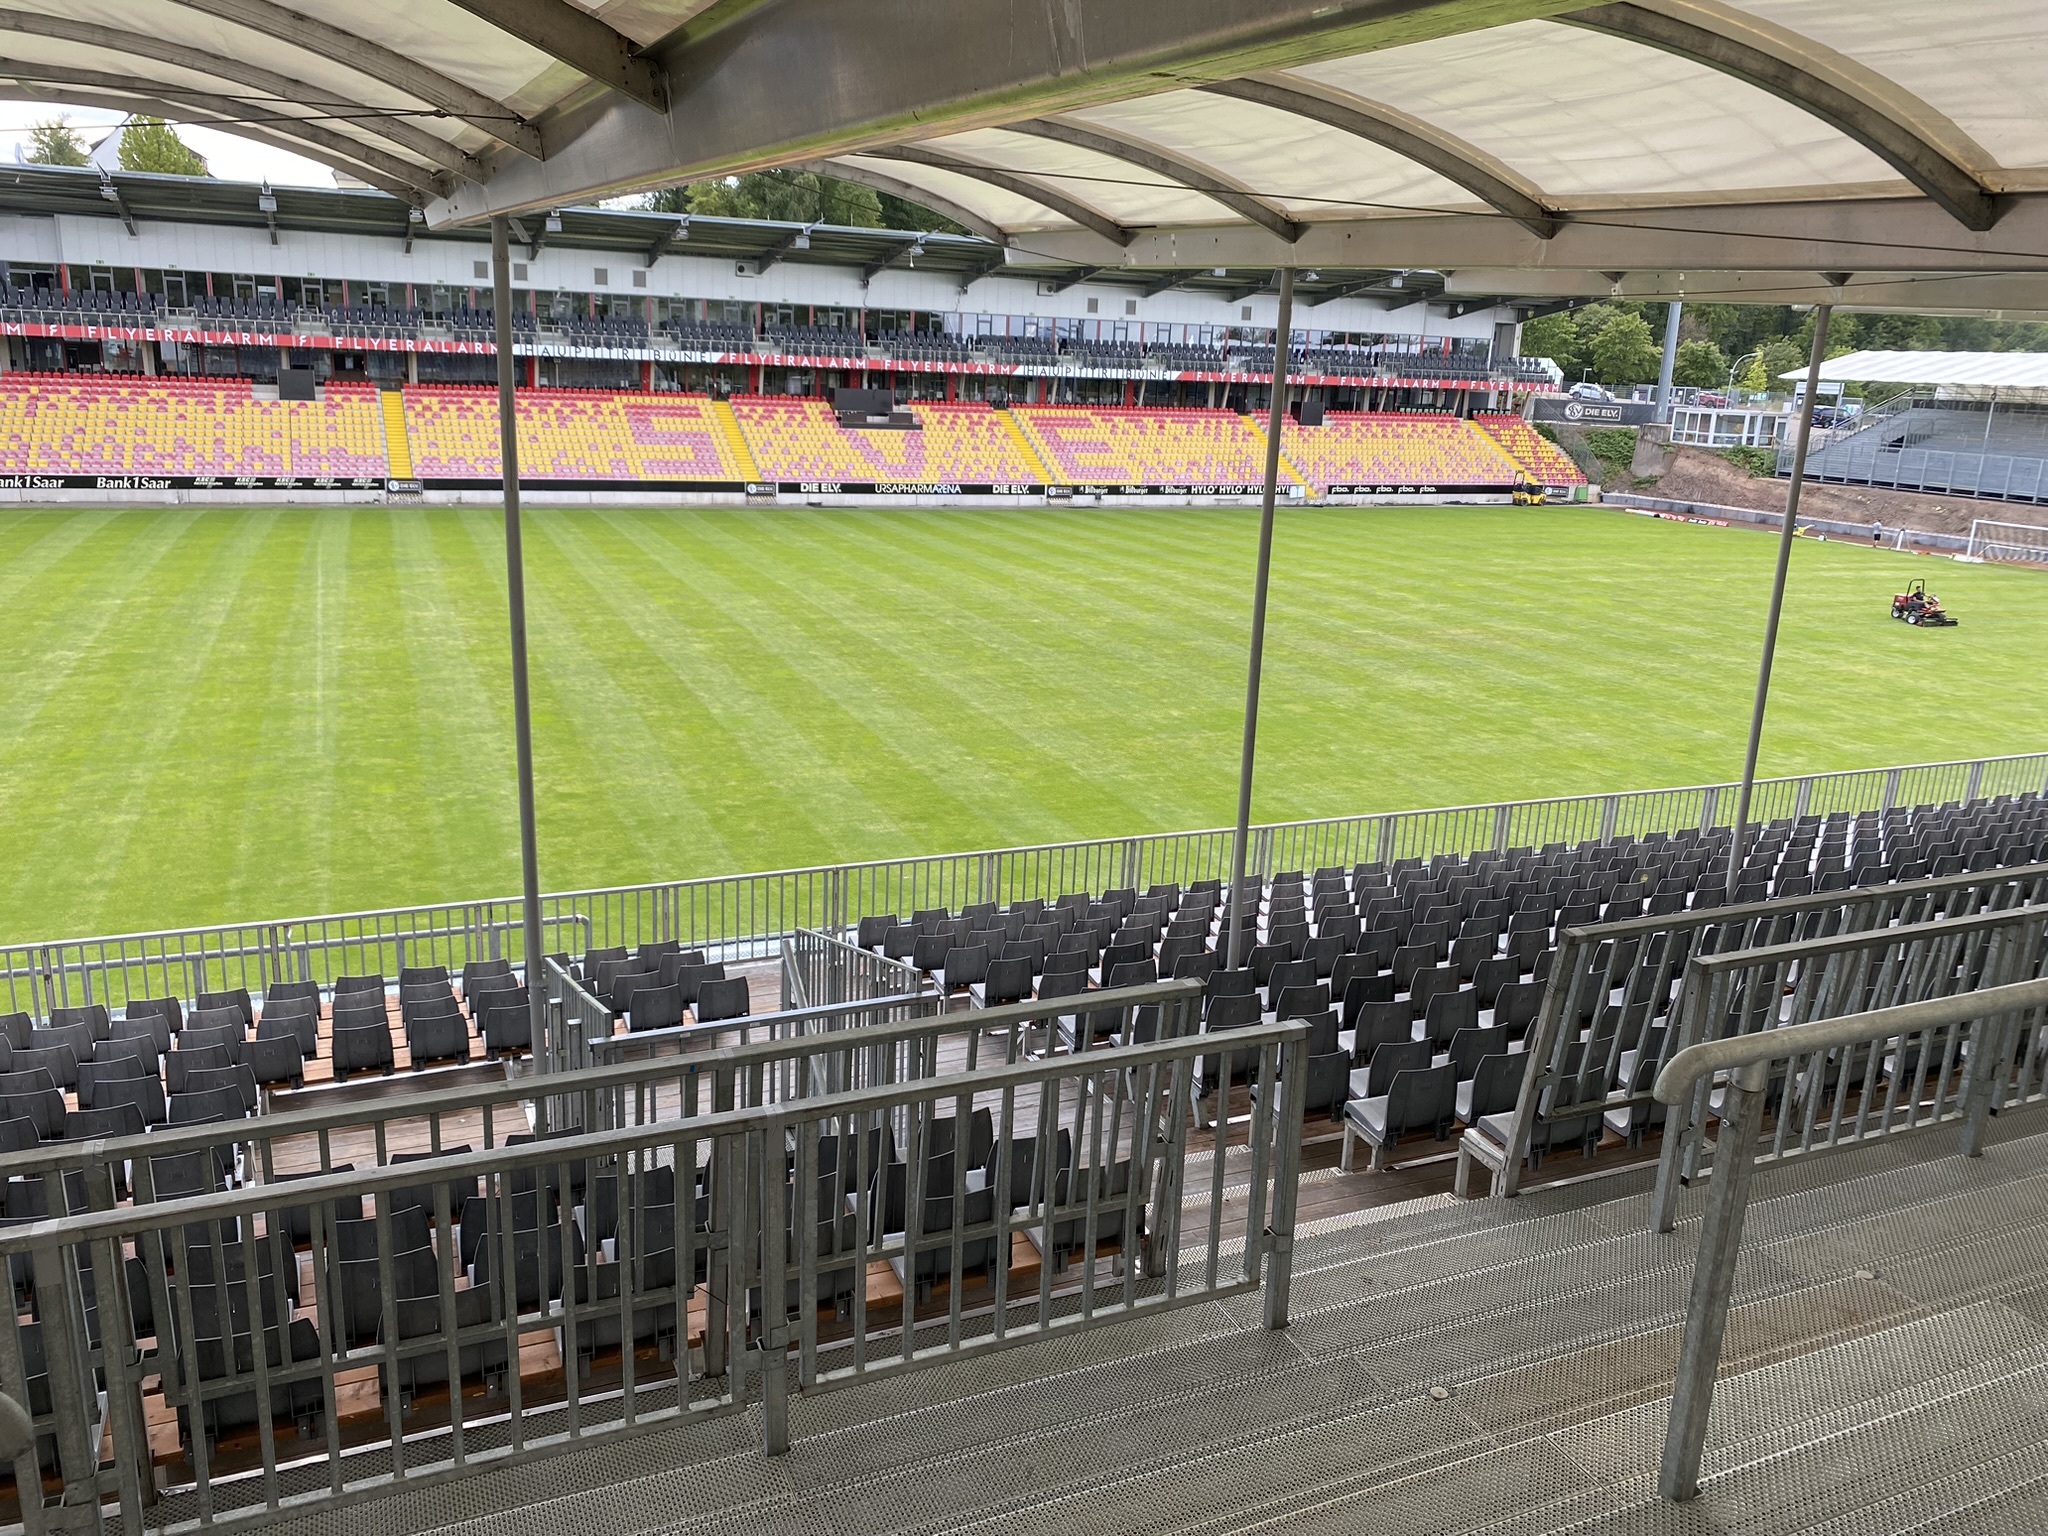 Leere Tribüne, aufgebaut von TS-Tribünen für die 2. Fußball-Bundesliga